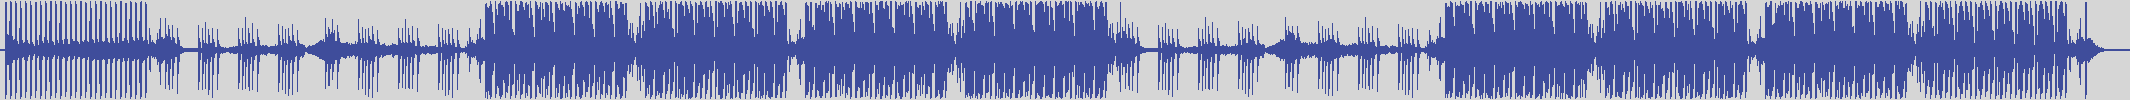 nf_boyz_records [NFY031] Jeff Desmond - Dangerous Liaisons [House Couture Mix] audio wave form